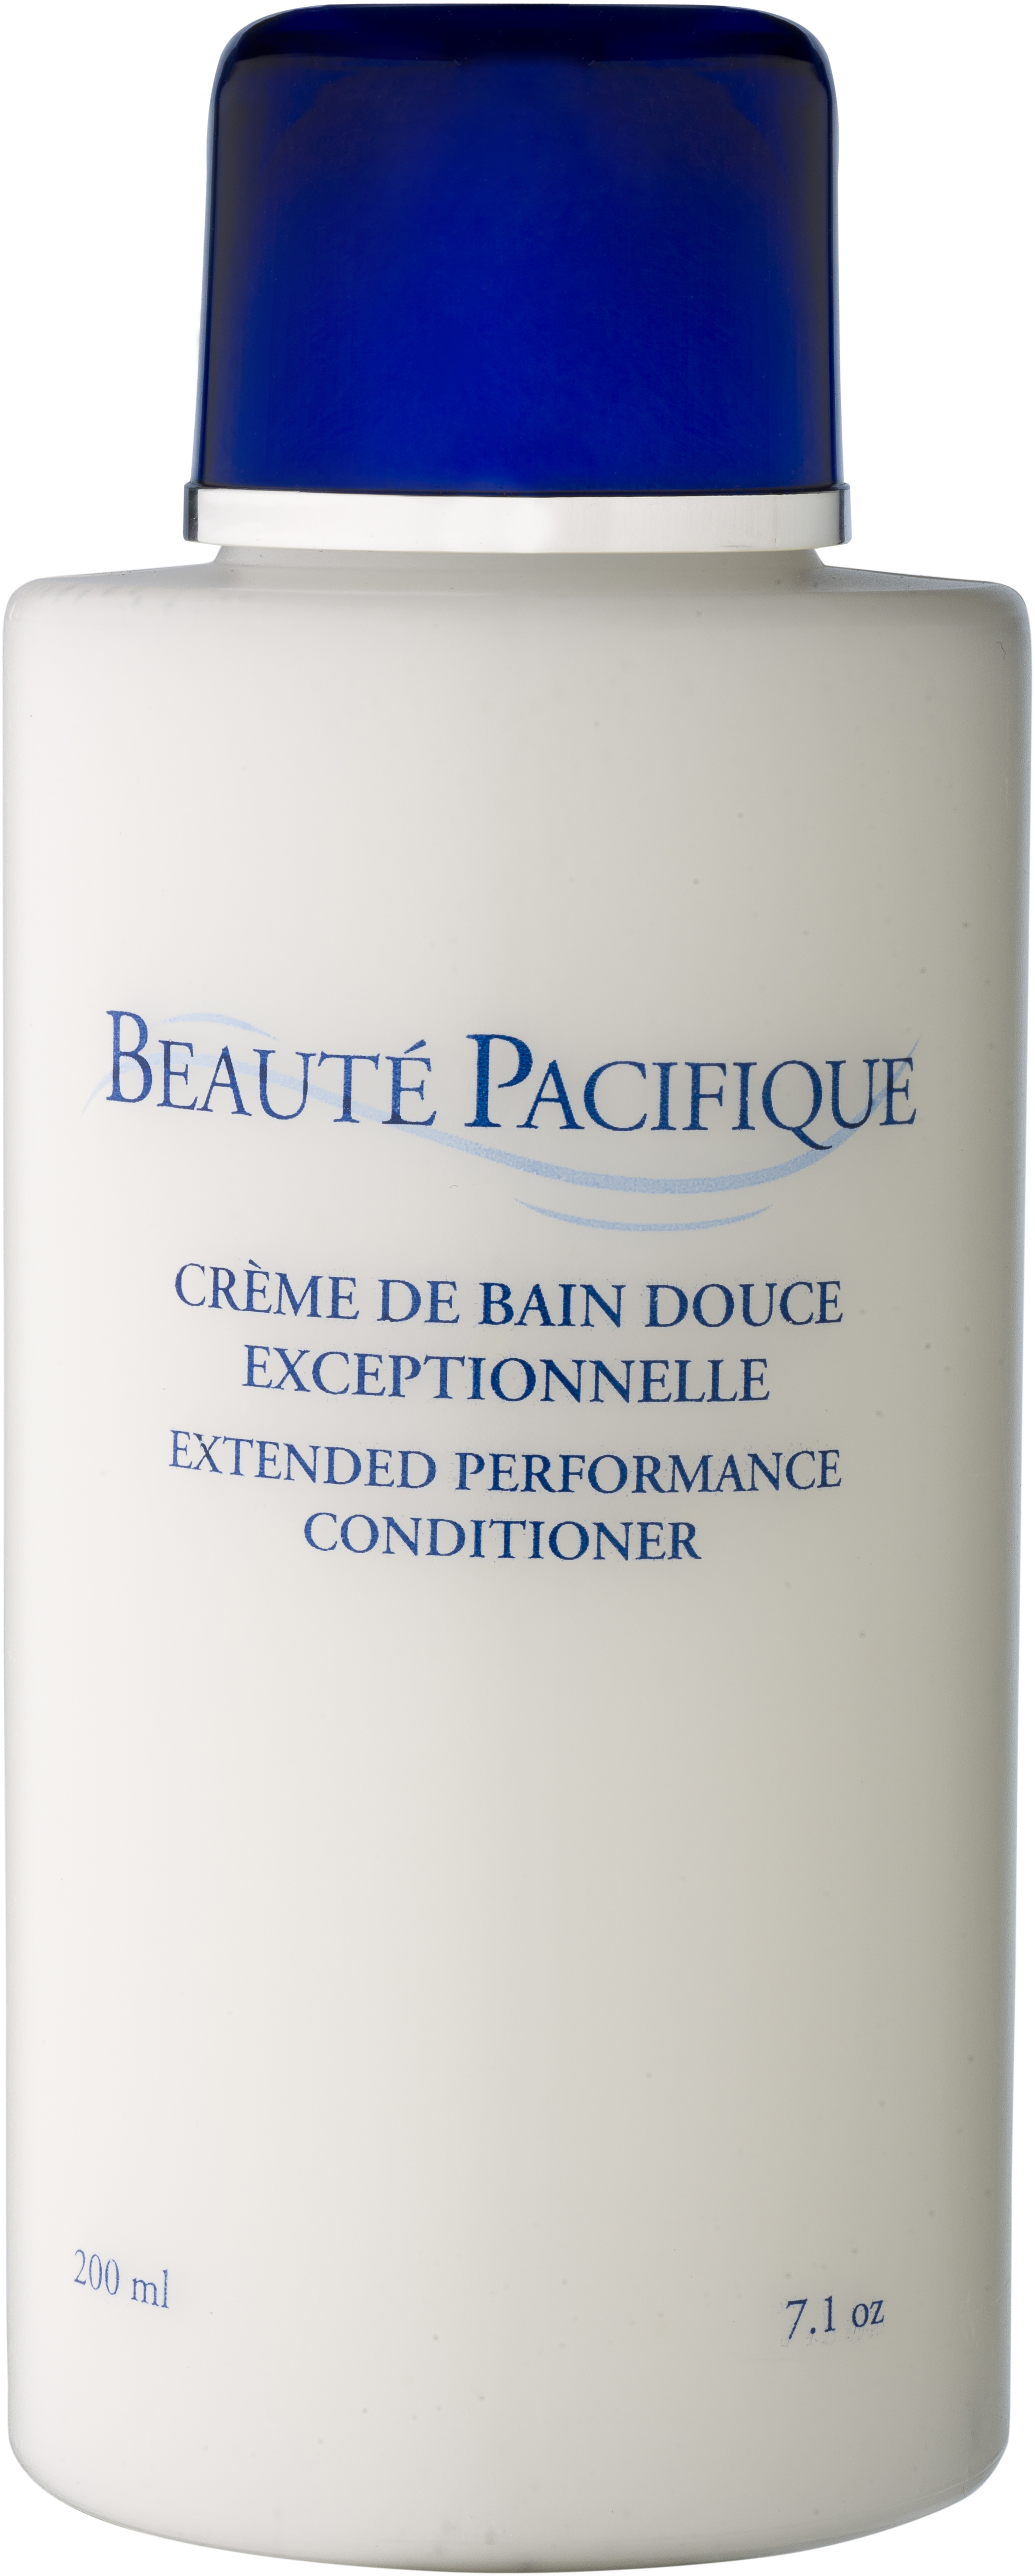 Beauté Pacifique Extended Performance Conditioner 200ml